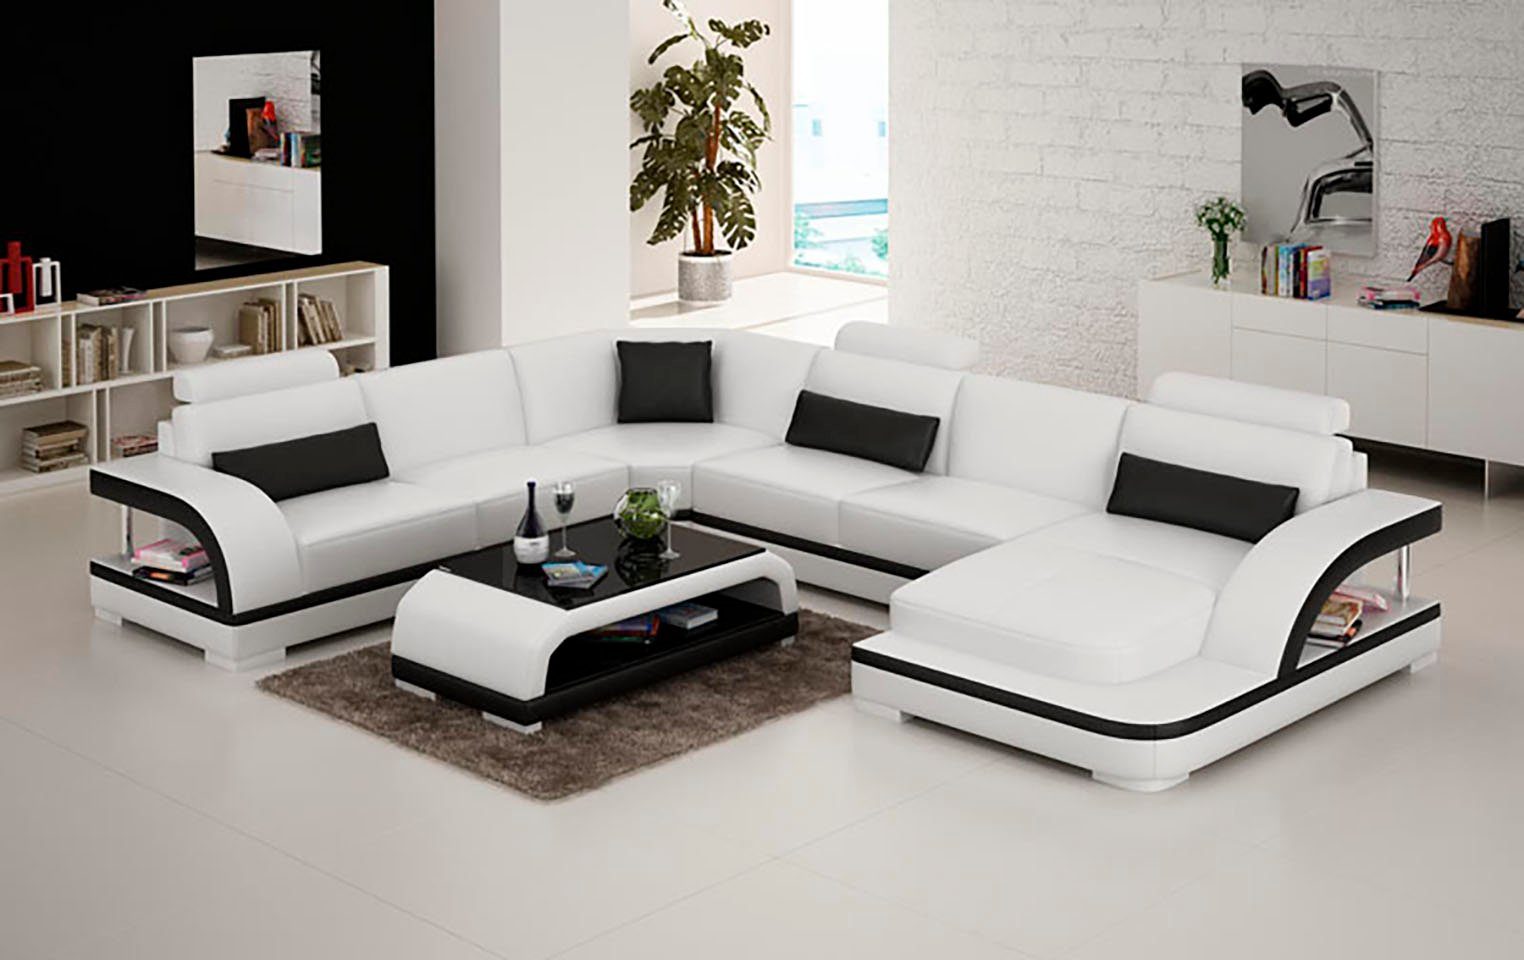 JVmoebel Ecksofa, Leder Eck Sofa Sofas Wohnlandschaft Modern UForm Design Couch Eck